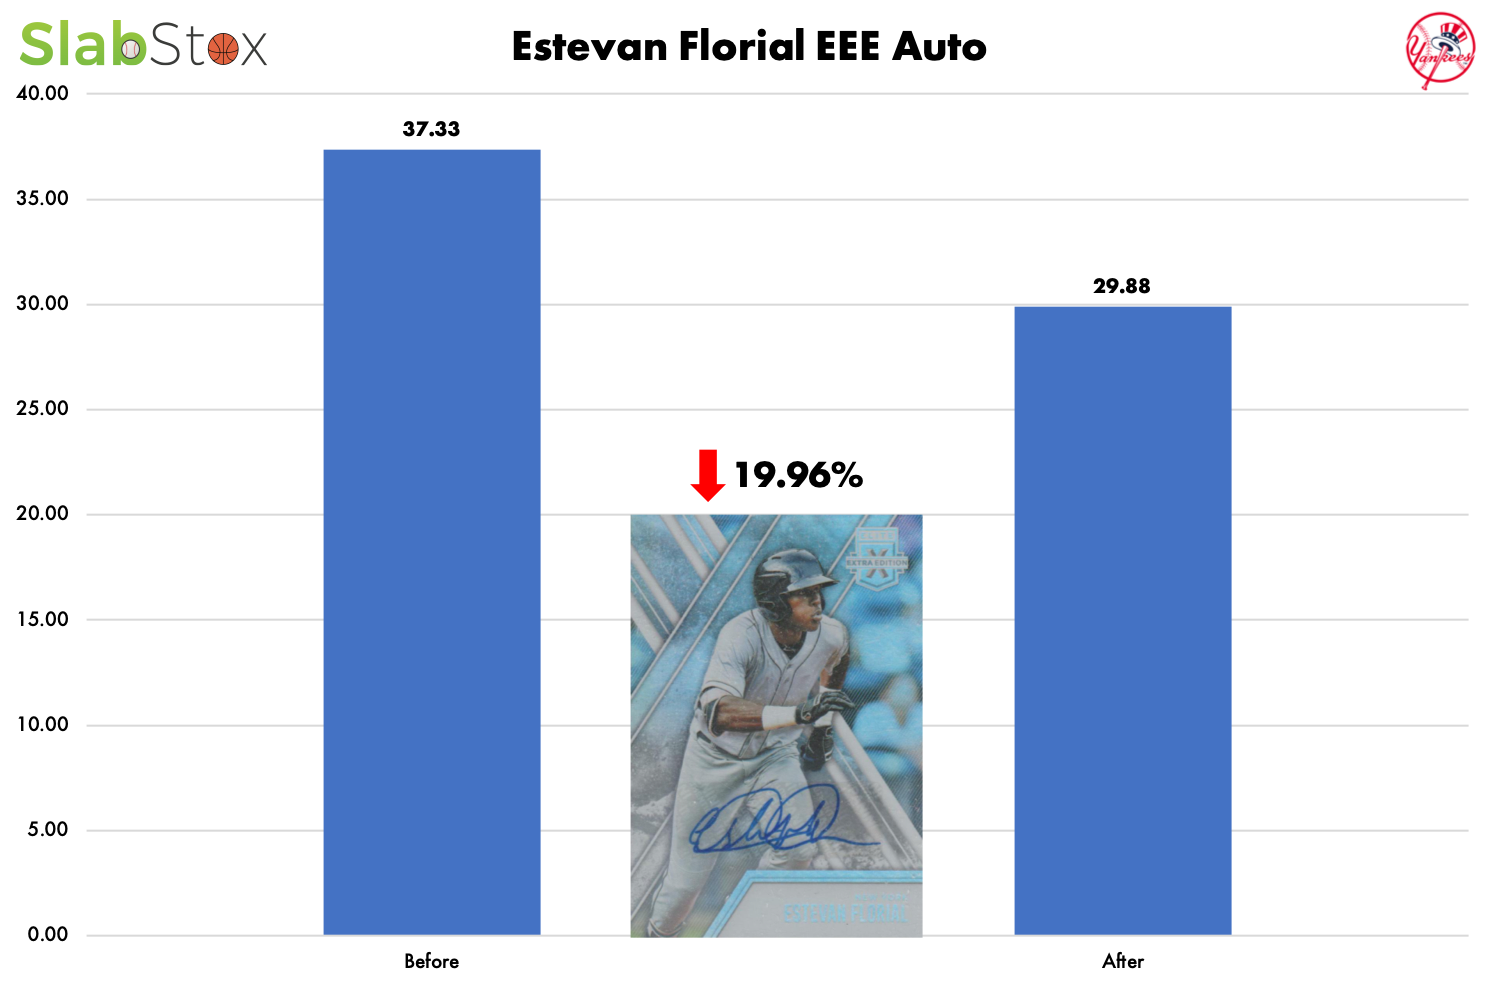 SlabStox Graph of Estevan Florial EEE Auto, New York Yankees